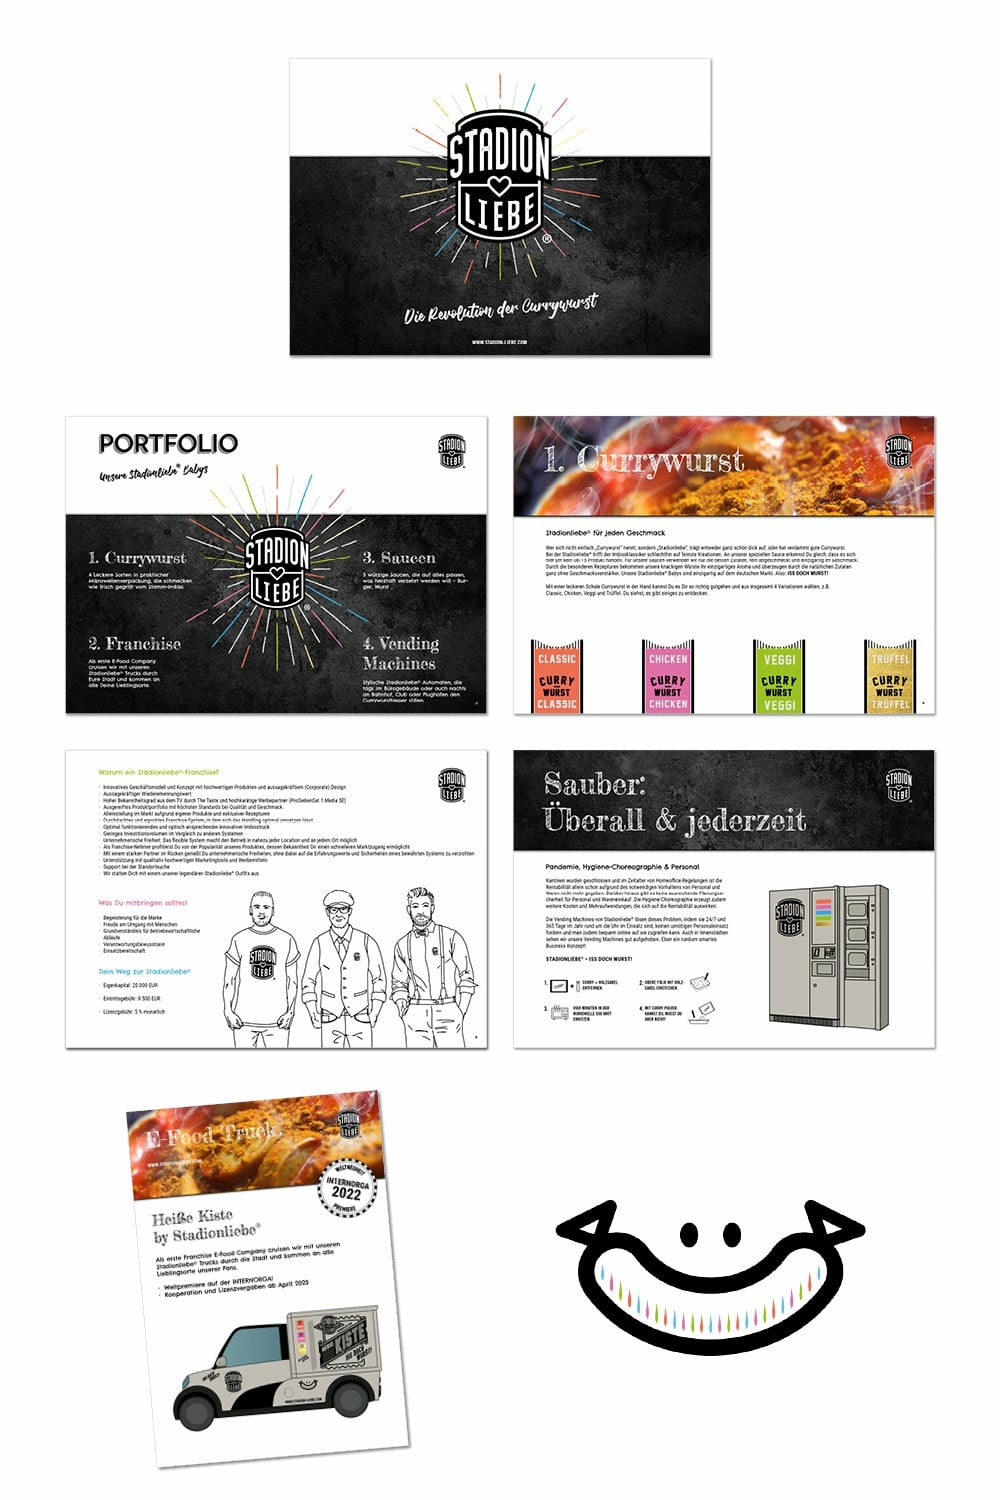 Stadionliebe Corporate Design Print und Web